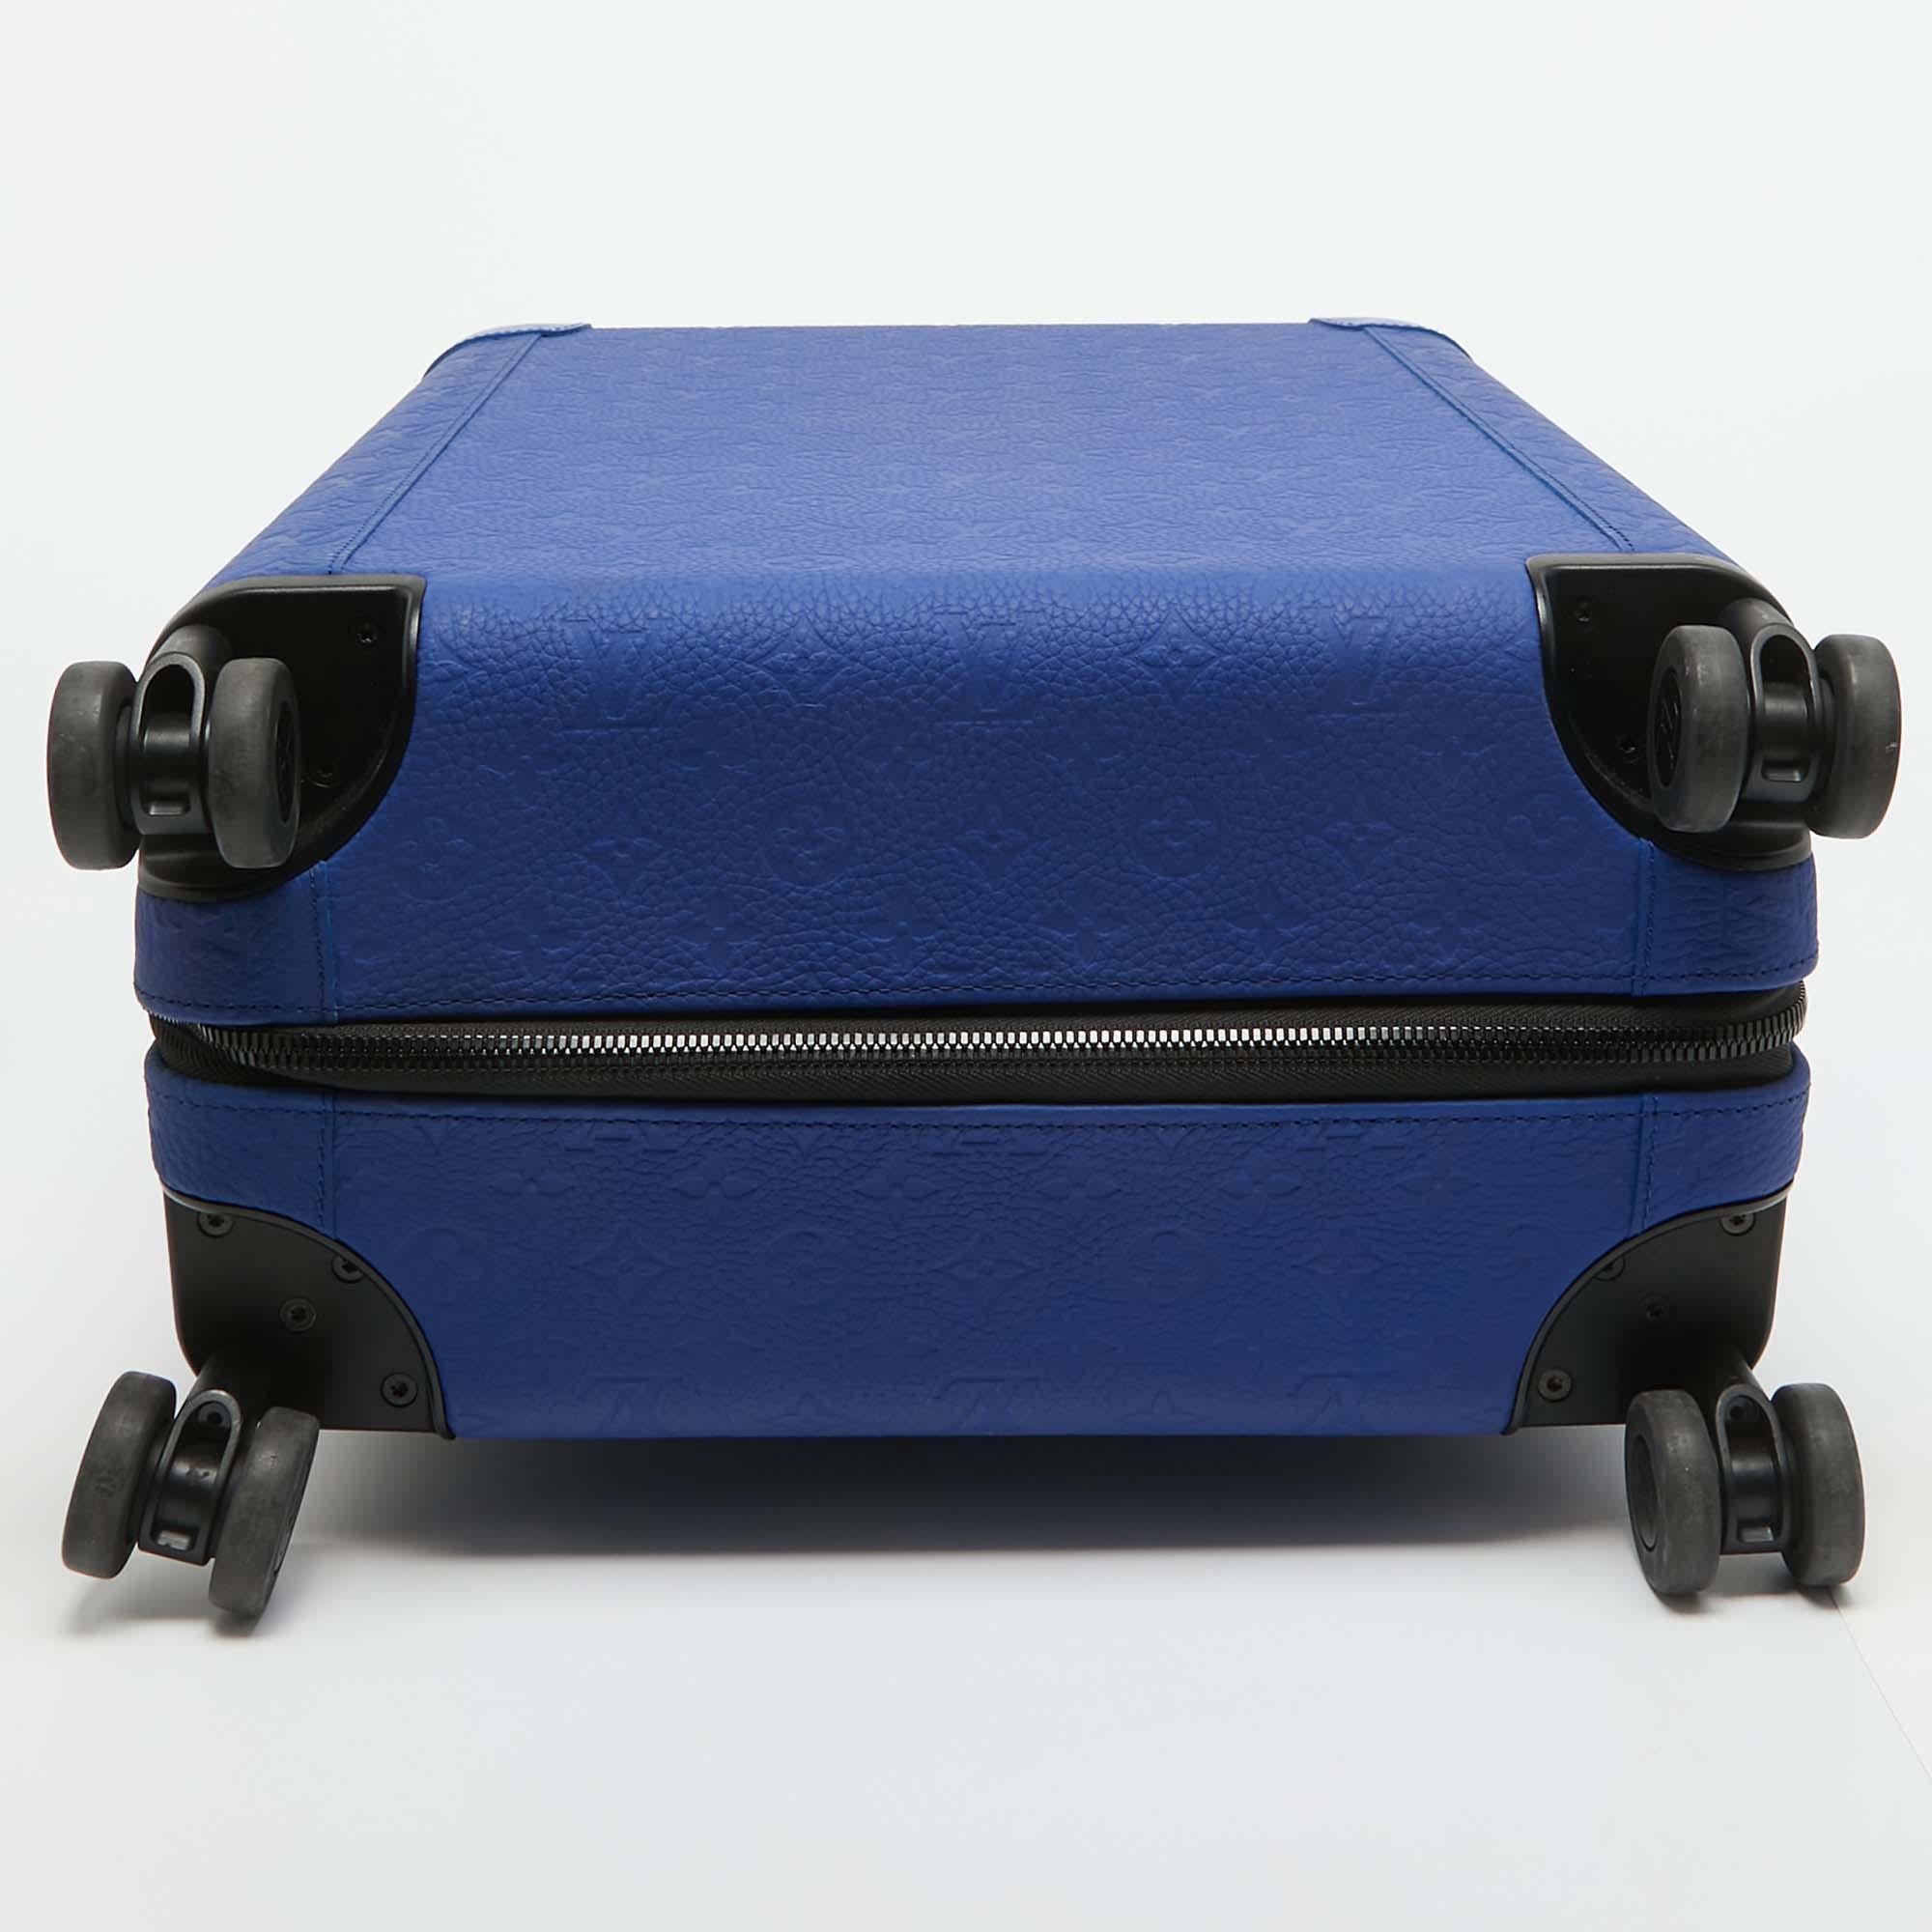 Maleta Louis Vuitton Horizon 55 de piel monograma Empreinte Azul Racing 1